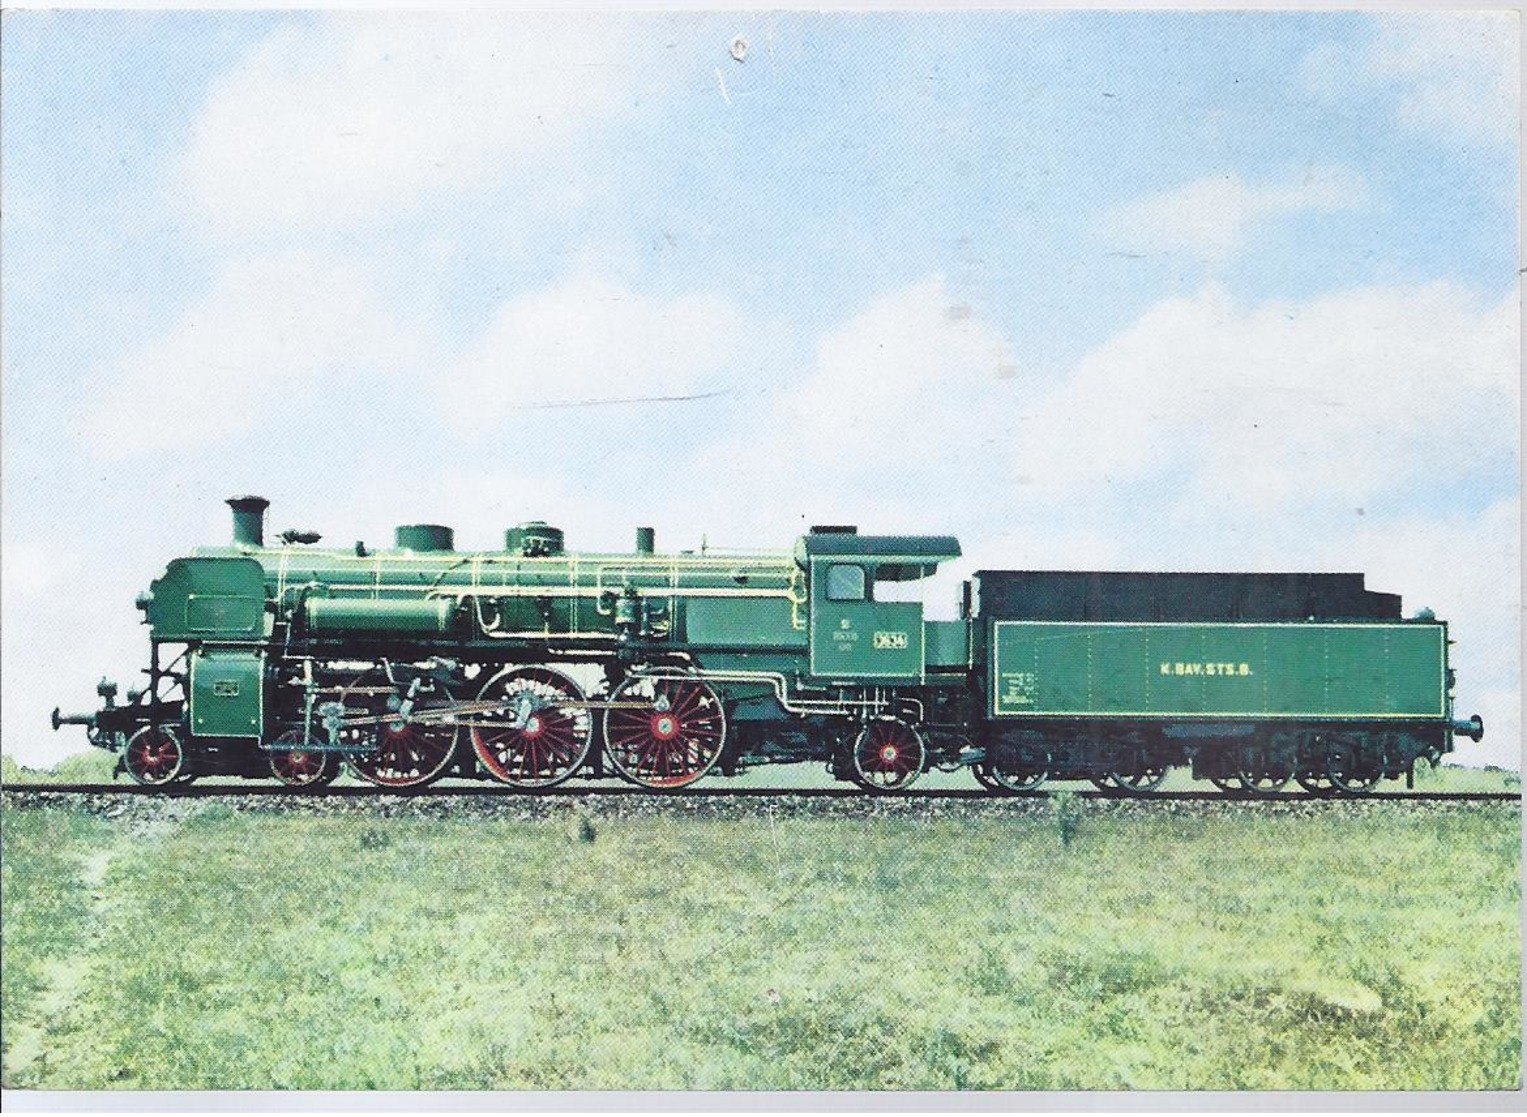 AK-F-216  -  Schnellzuglokomotive Baureihe 18 - Bayerische Staatsbahn - 1908    -   Krauss Maffei , München - Treni